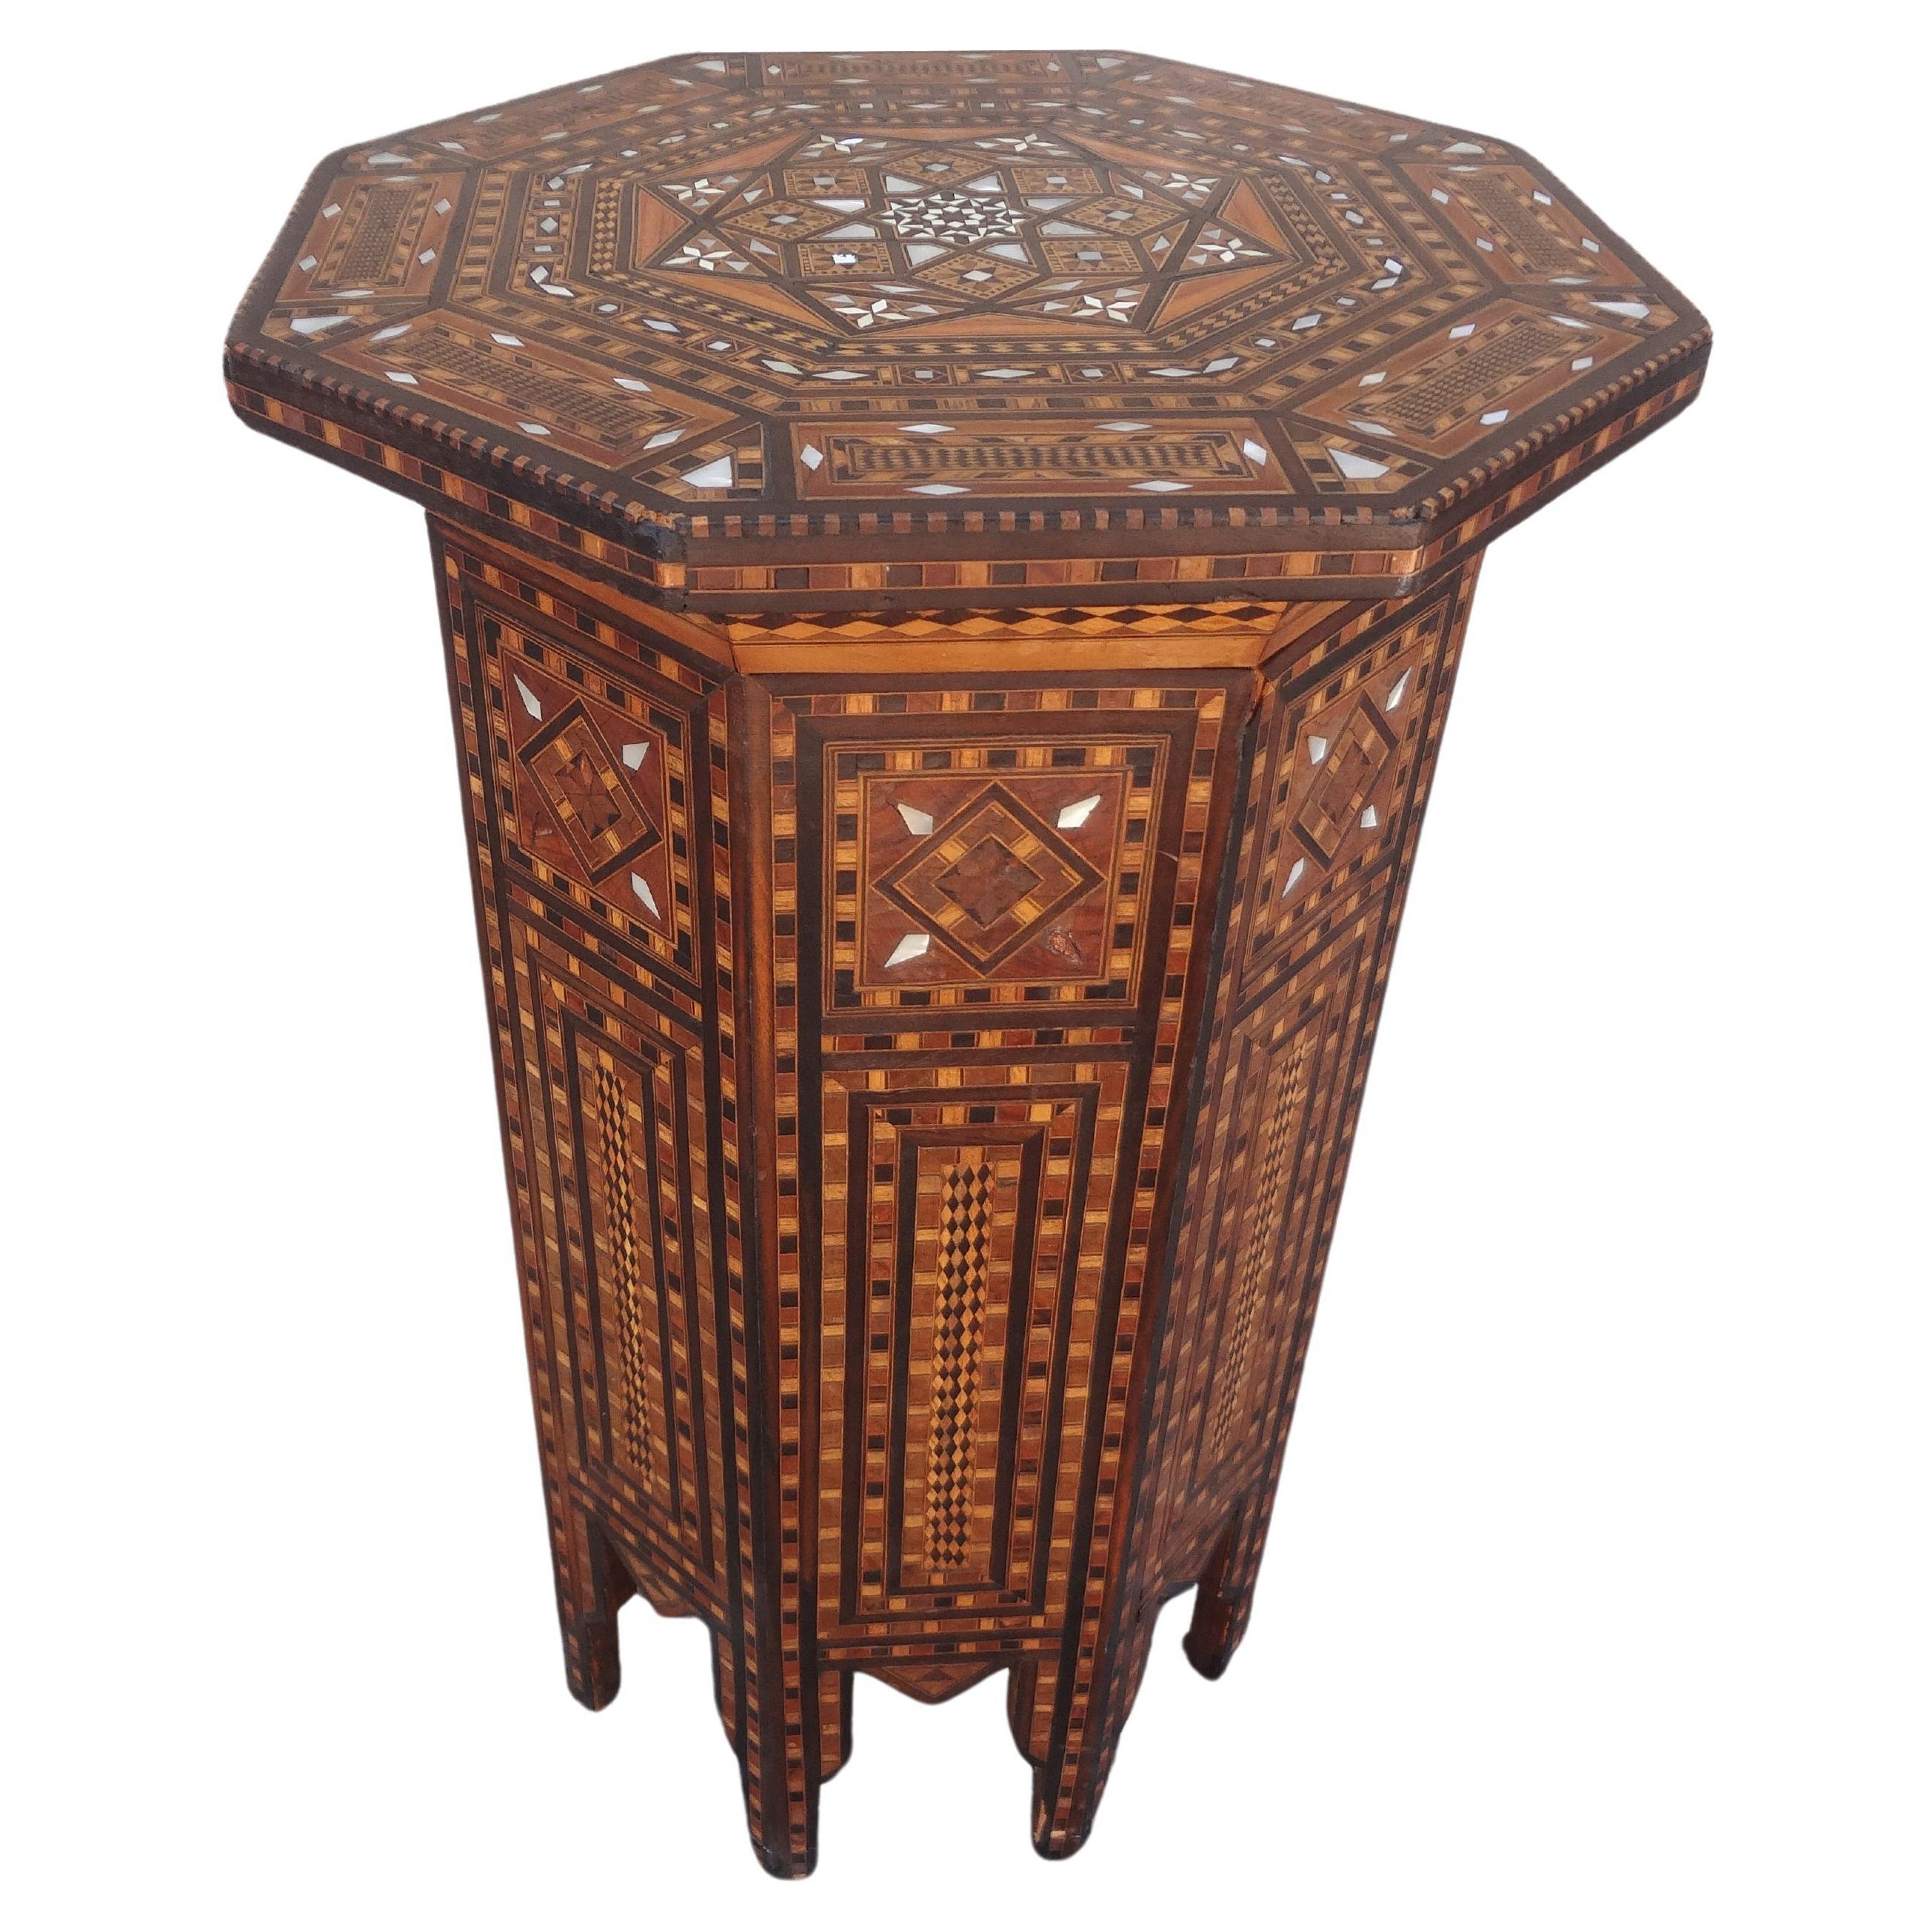 Achteckiger Vintage-Tisch im arabischen Stil des Nahen Ostens mit Intarsien